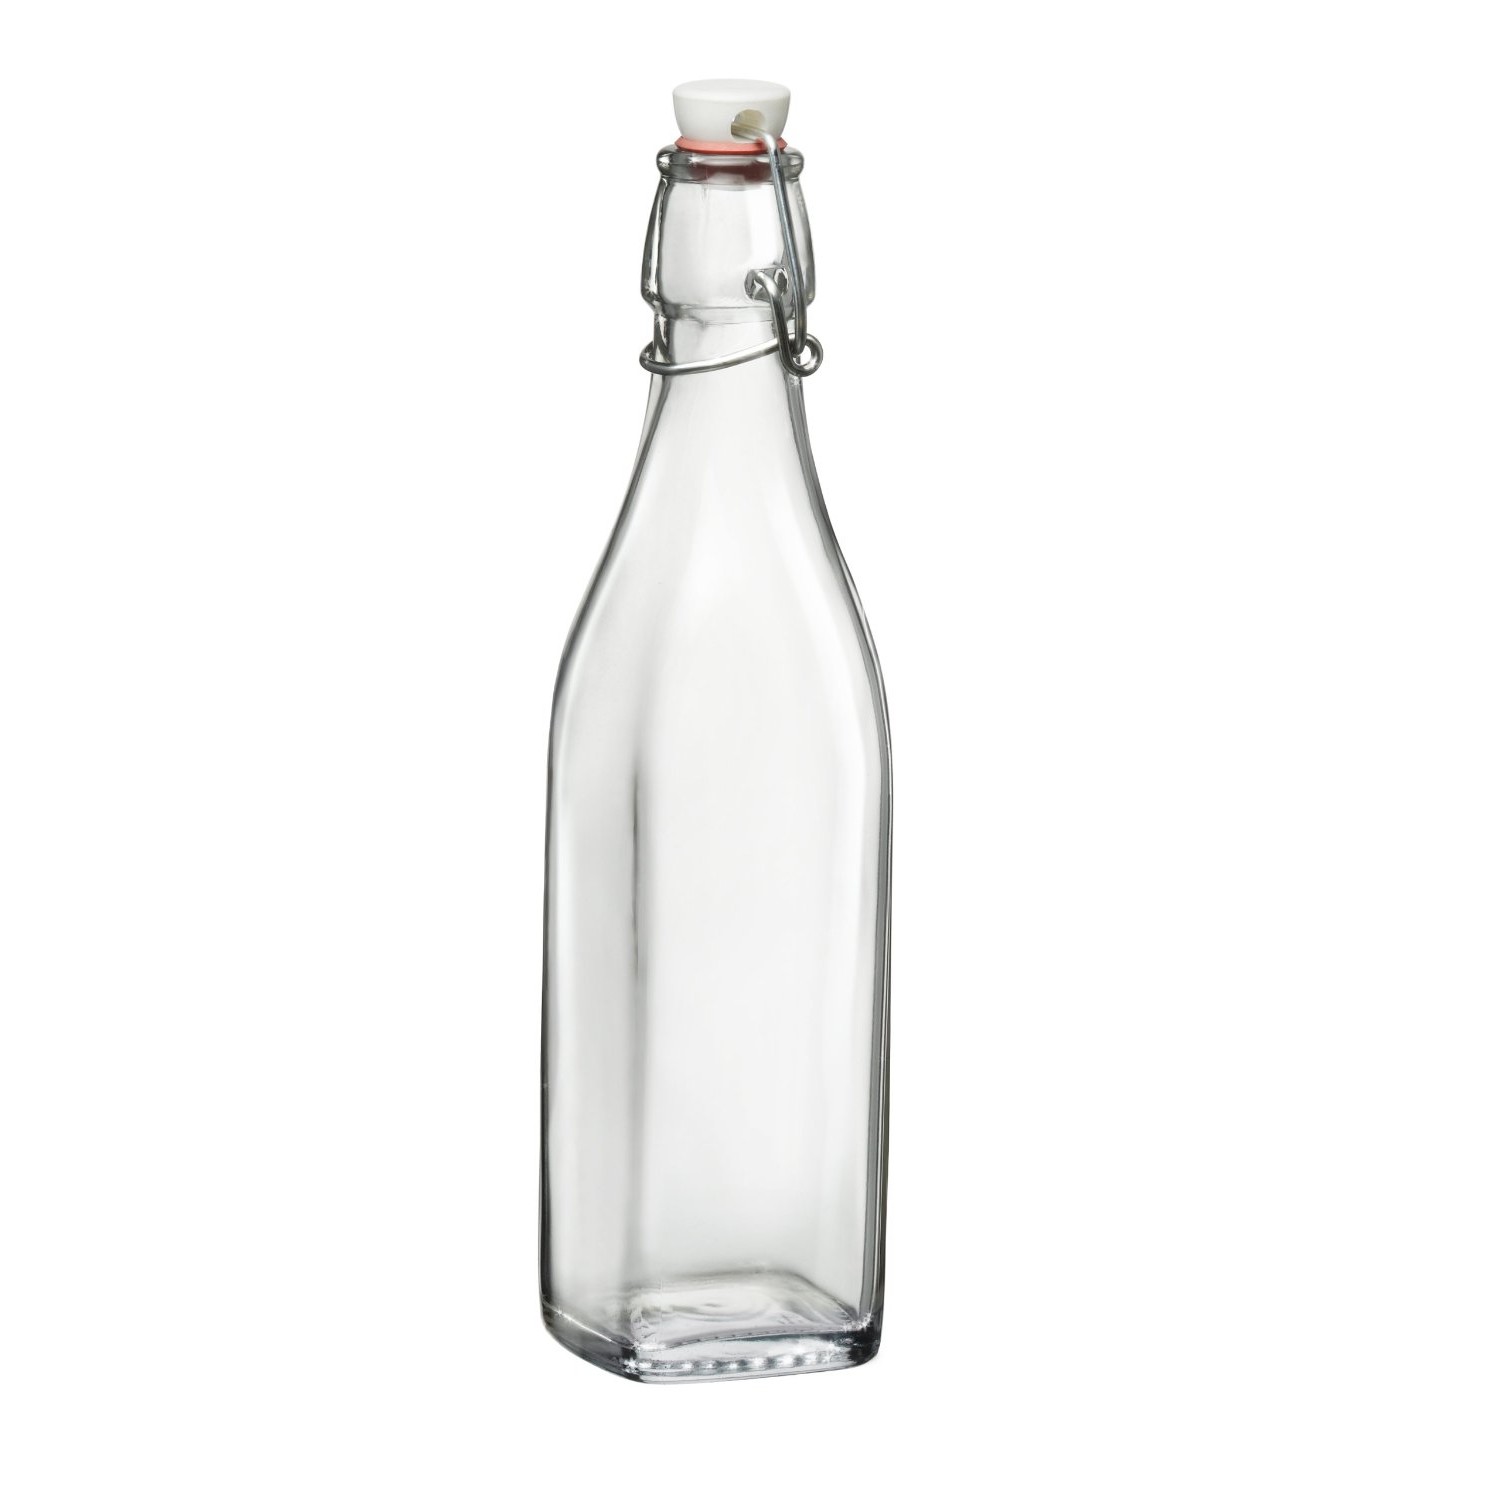 Creative water bottle, HD Cli